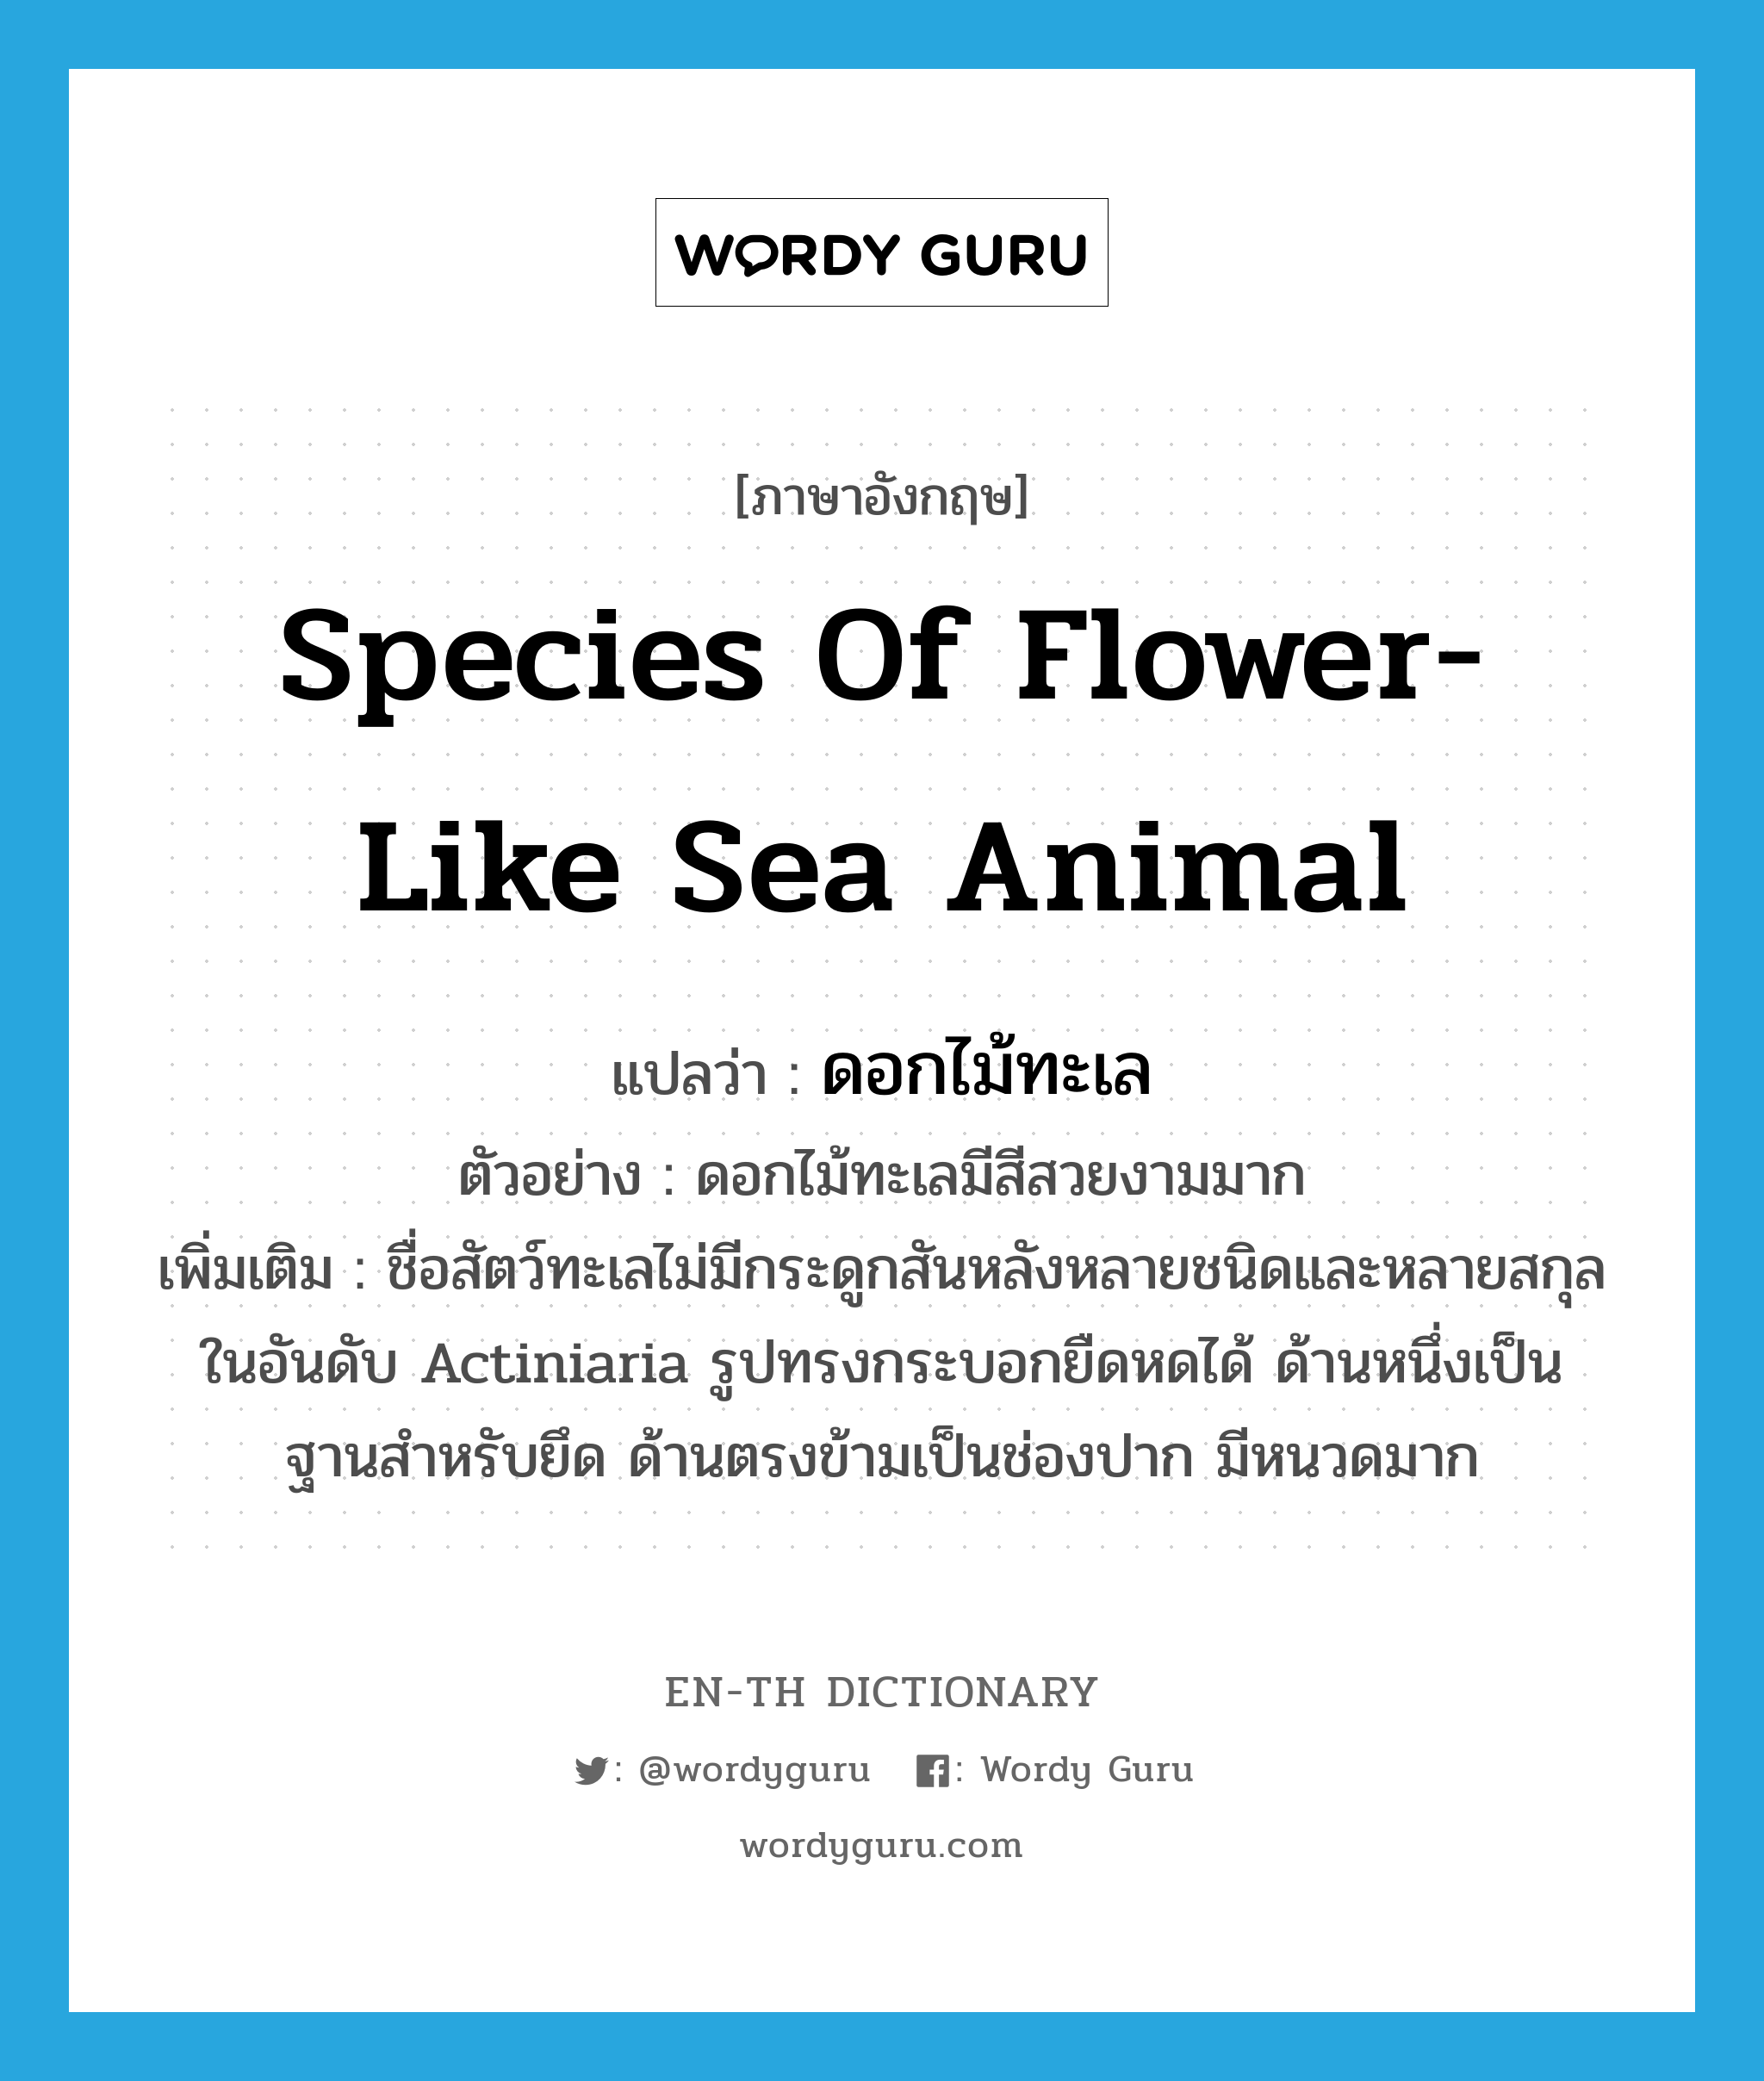 ดอกไม้ทะเล ภาษาอังกฤษ?, คำศัพท์ภาษาอังกฤษ ดอกไม้ทะเล แปลว่า species of flower-like sea animal ประเภท N ตัวอย่าง ดอกไม้ทะเลมีสีสวยงามมาก เพิ่มเติม ชื่อสัตว์ทะเลไม่มีกระดูกสันหลังหลายชนิดและหลายสกุล ในอันดับ Actiniaria รูปทรงกระบอกยืดหดได้ ด้านหนึ่งเป็นฐานสำหรับยึด ด้านตรงข้ามเป็นช่องปาก มีหนวดมาก หมวด N